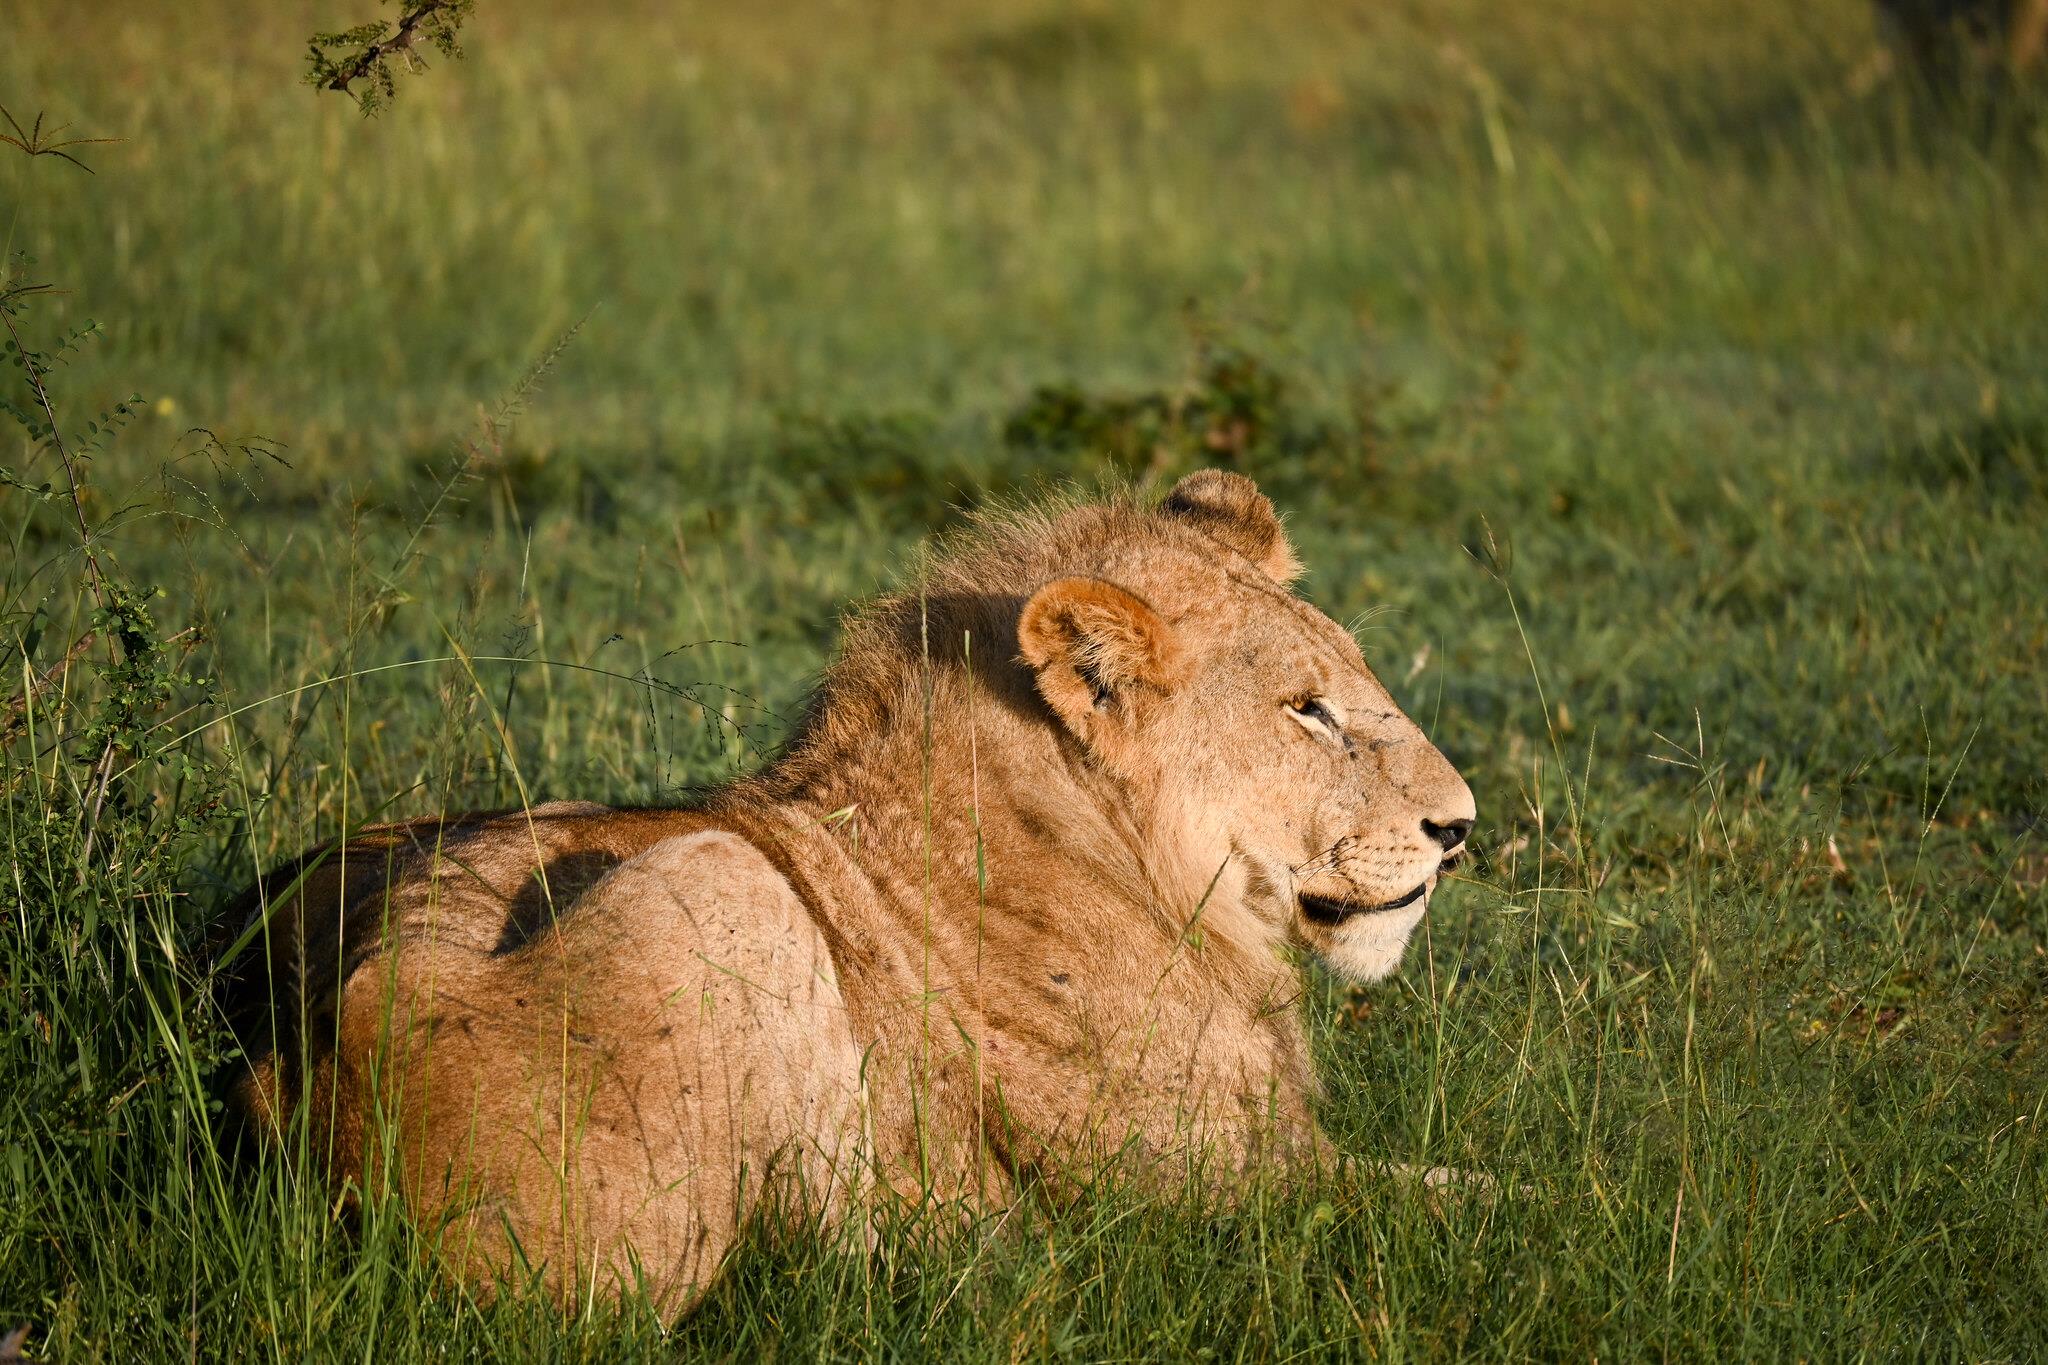 What are Africa's BIG 5 safari animals?